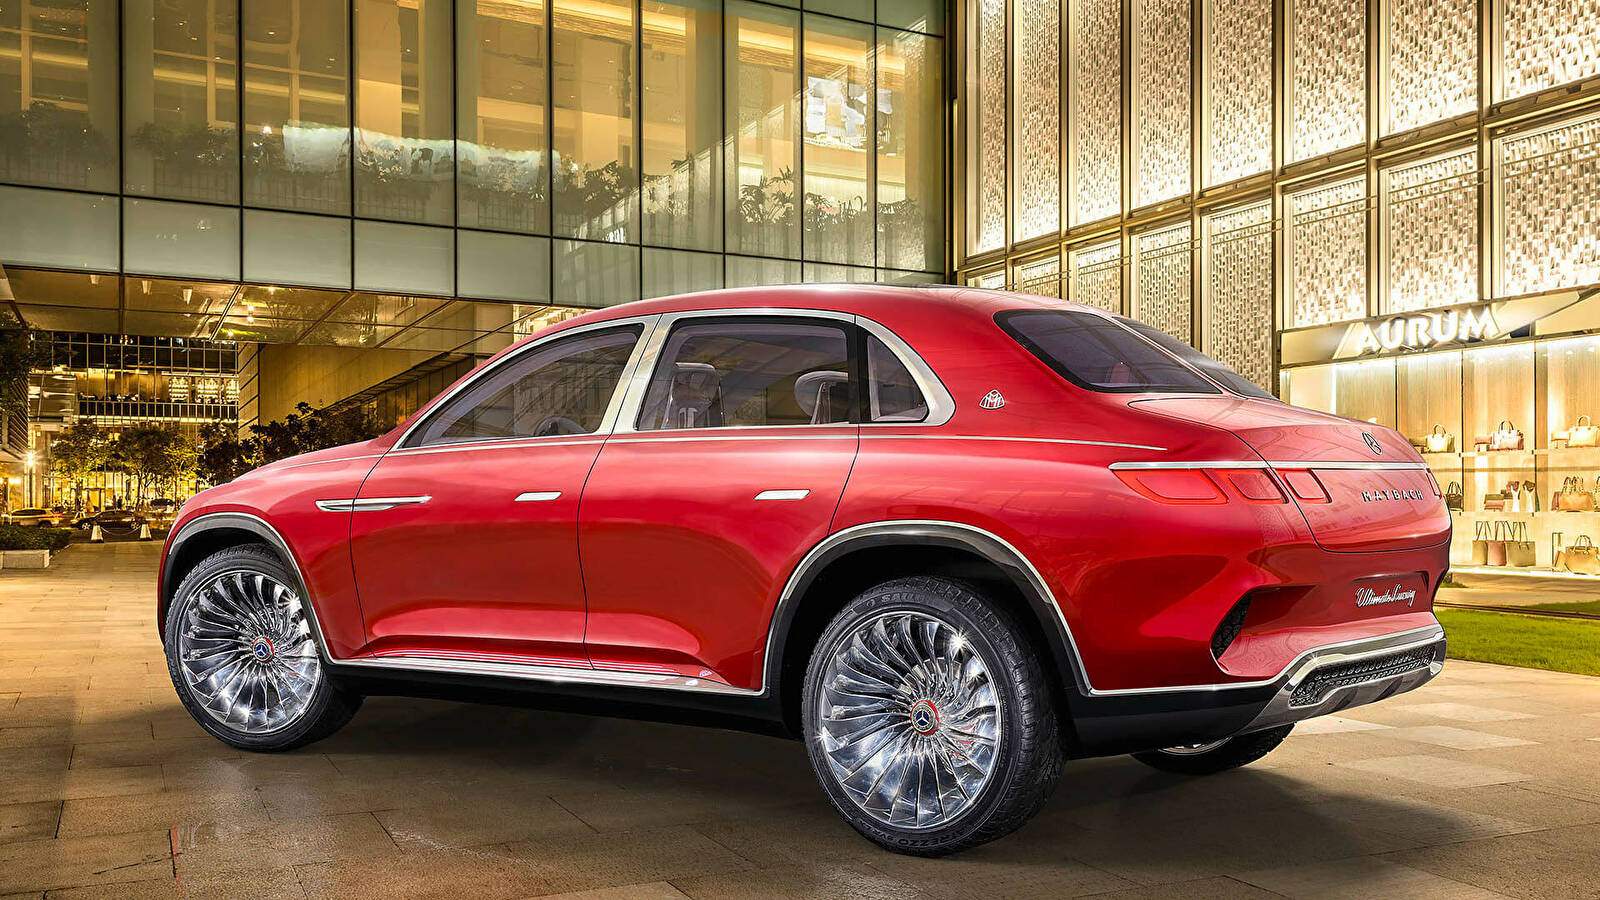 Mercedes-Maybach Vision Ultimate Luxury (2018),  ajouté par fox58